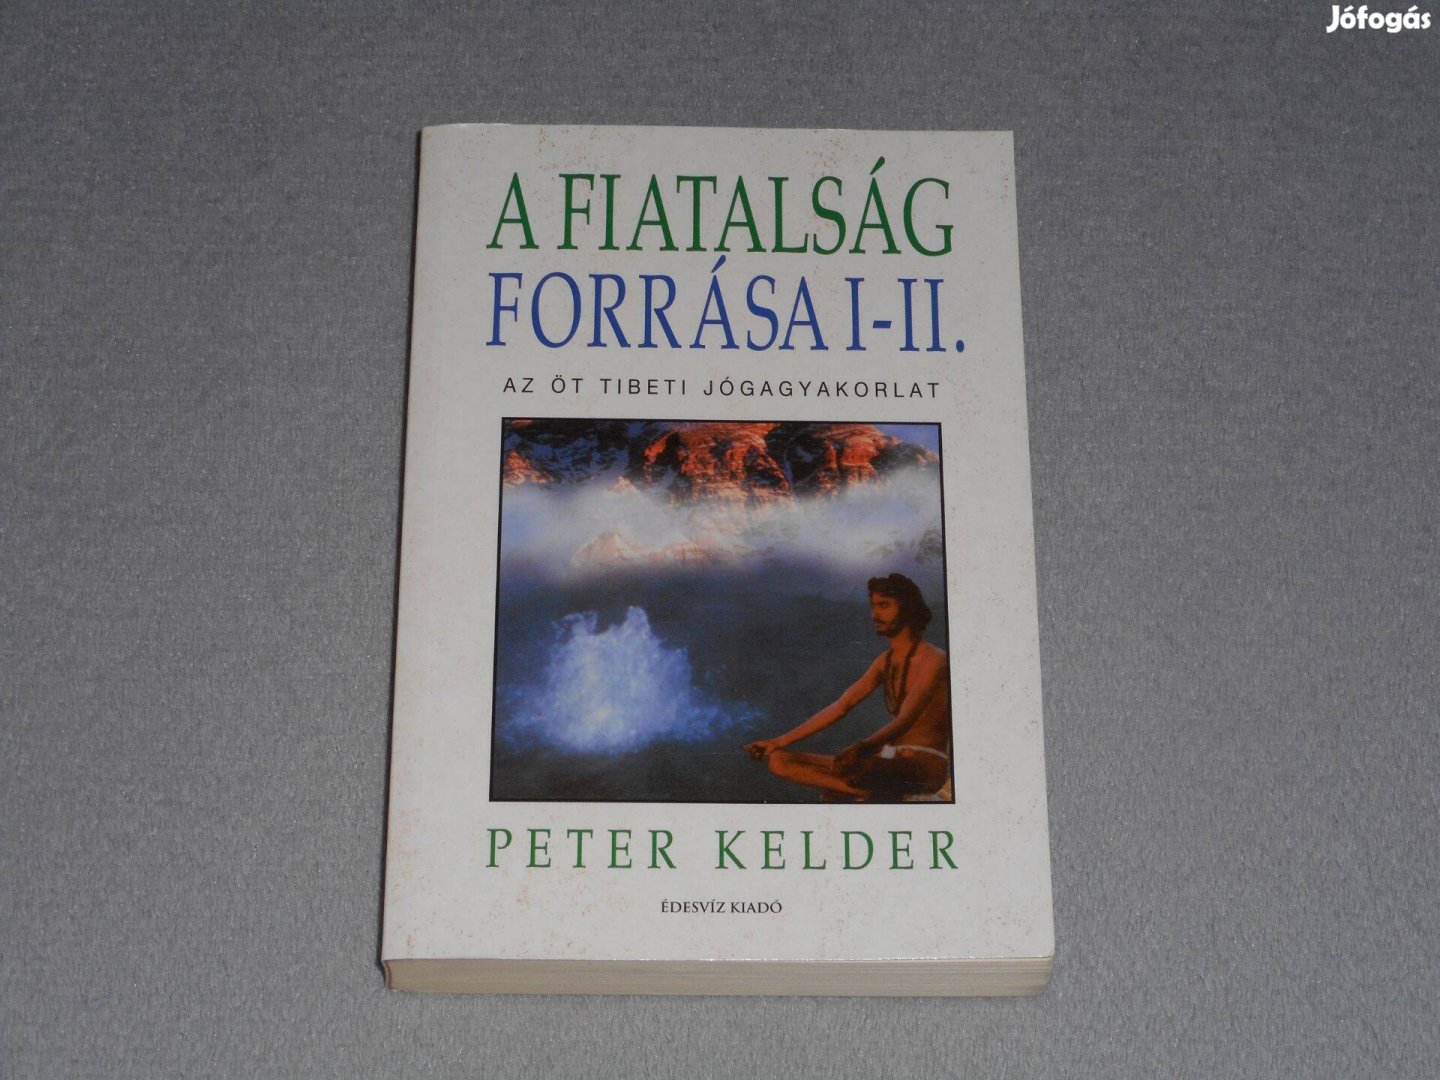 Peter Kelder - A fiatalság forrása I-II. - Az öt tibeti jógagyakorlat